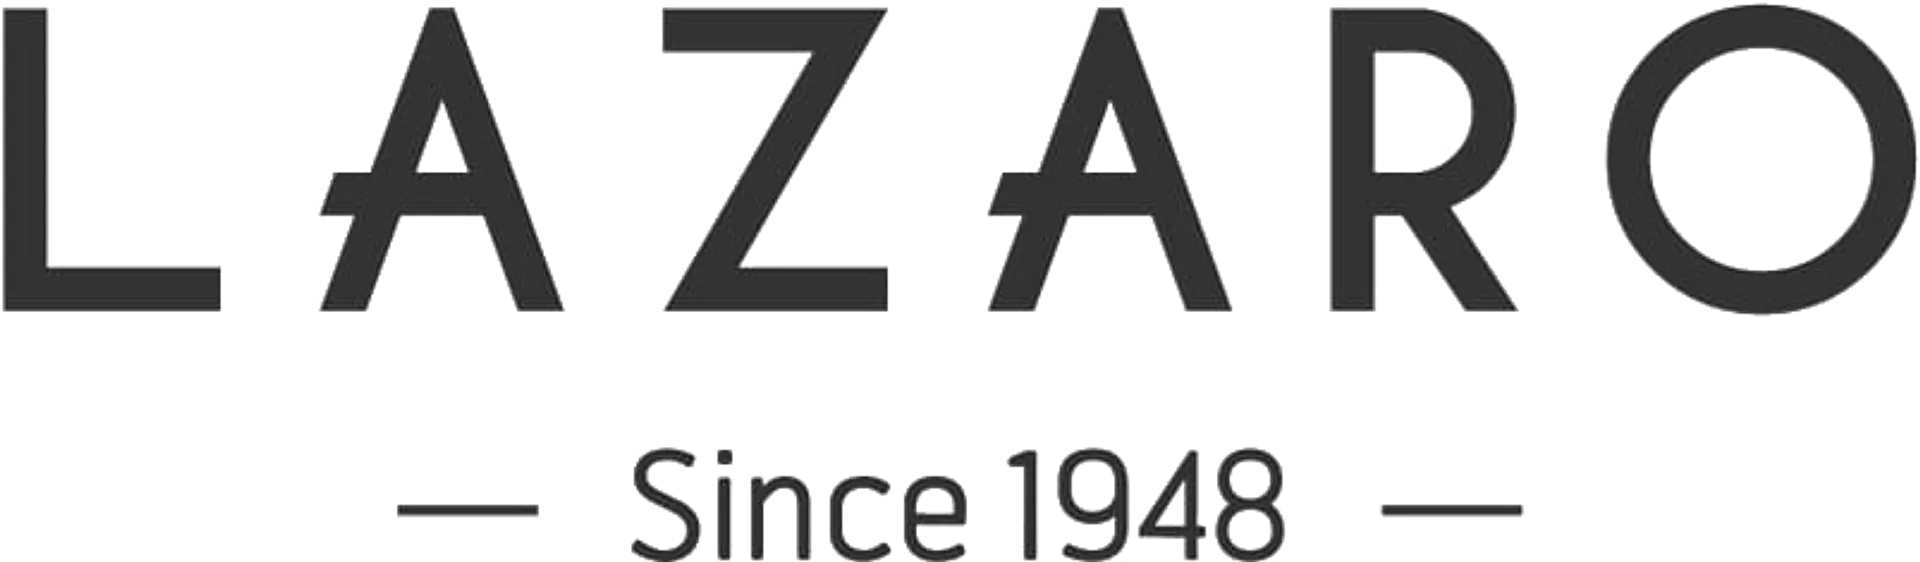 LAZARO logo de catálogo